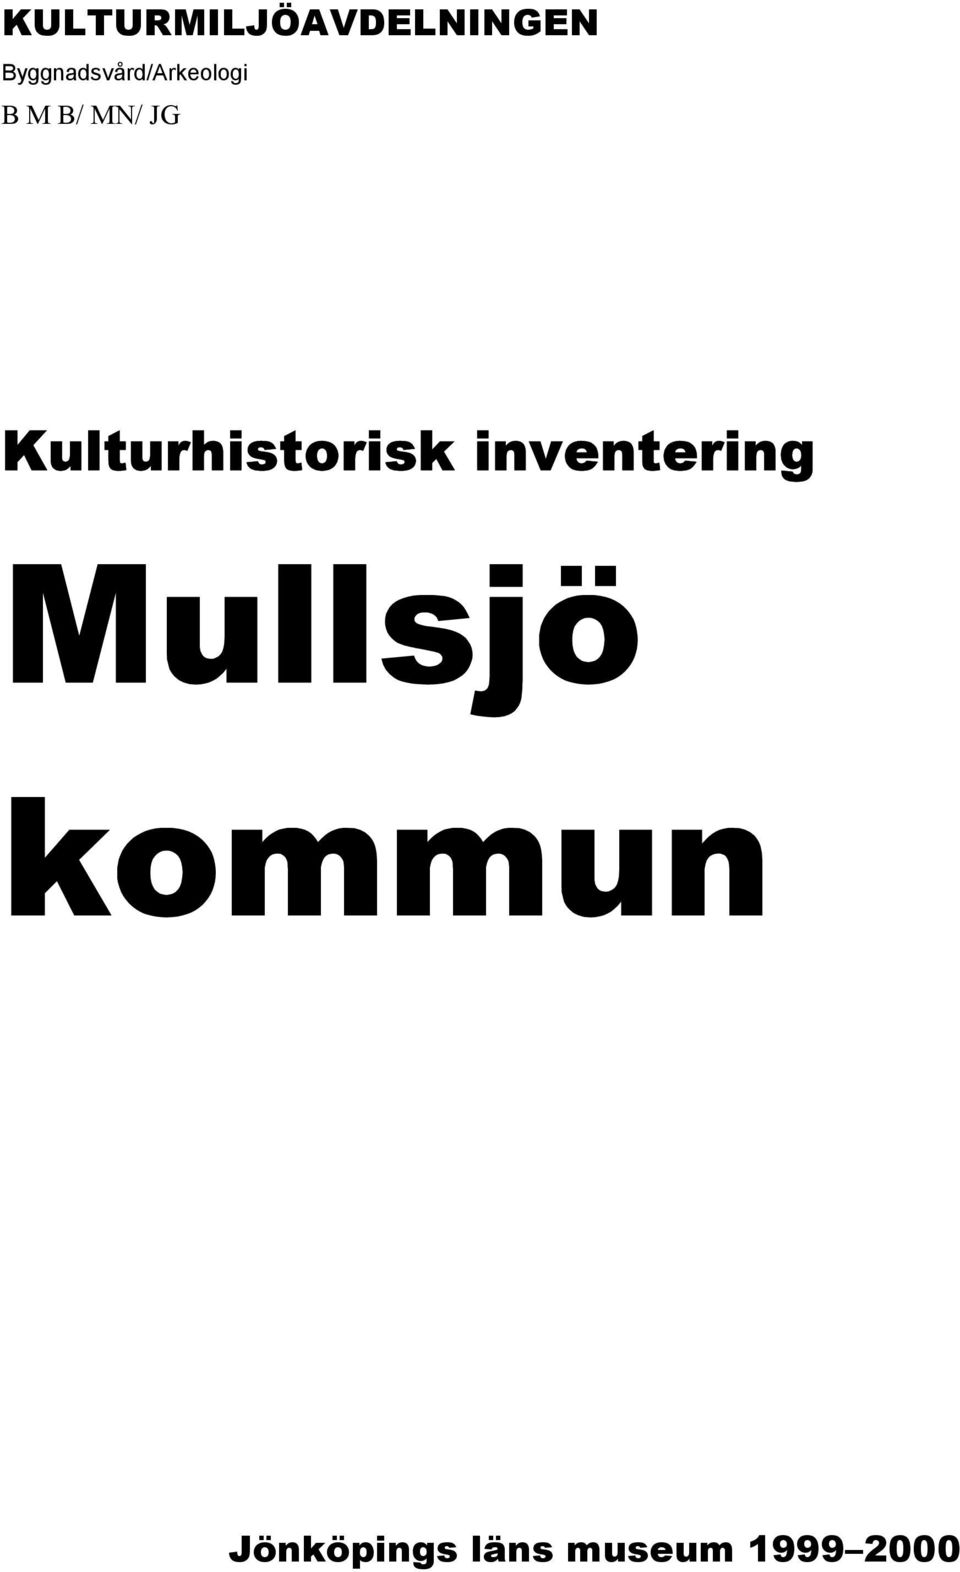 MN/ JG Kulturhistorisk